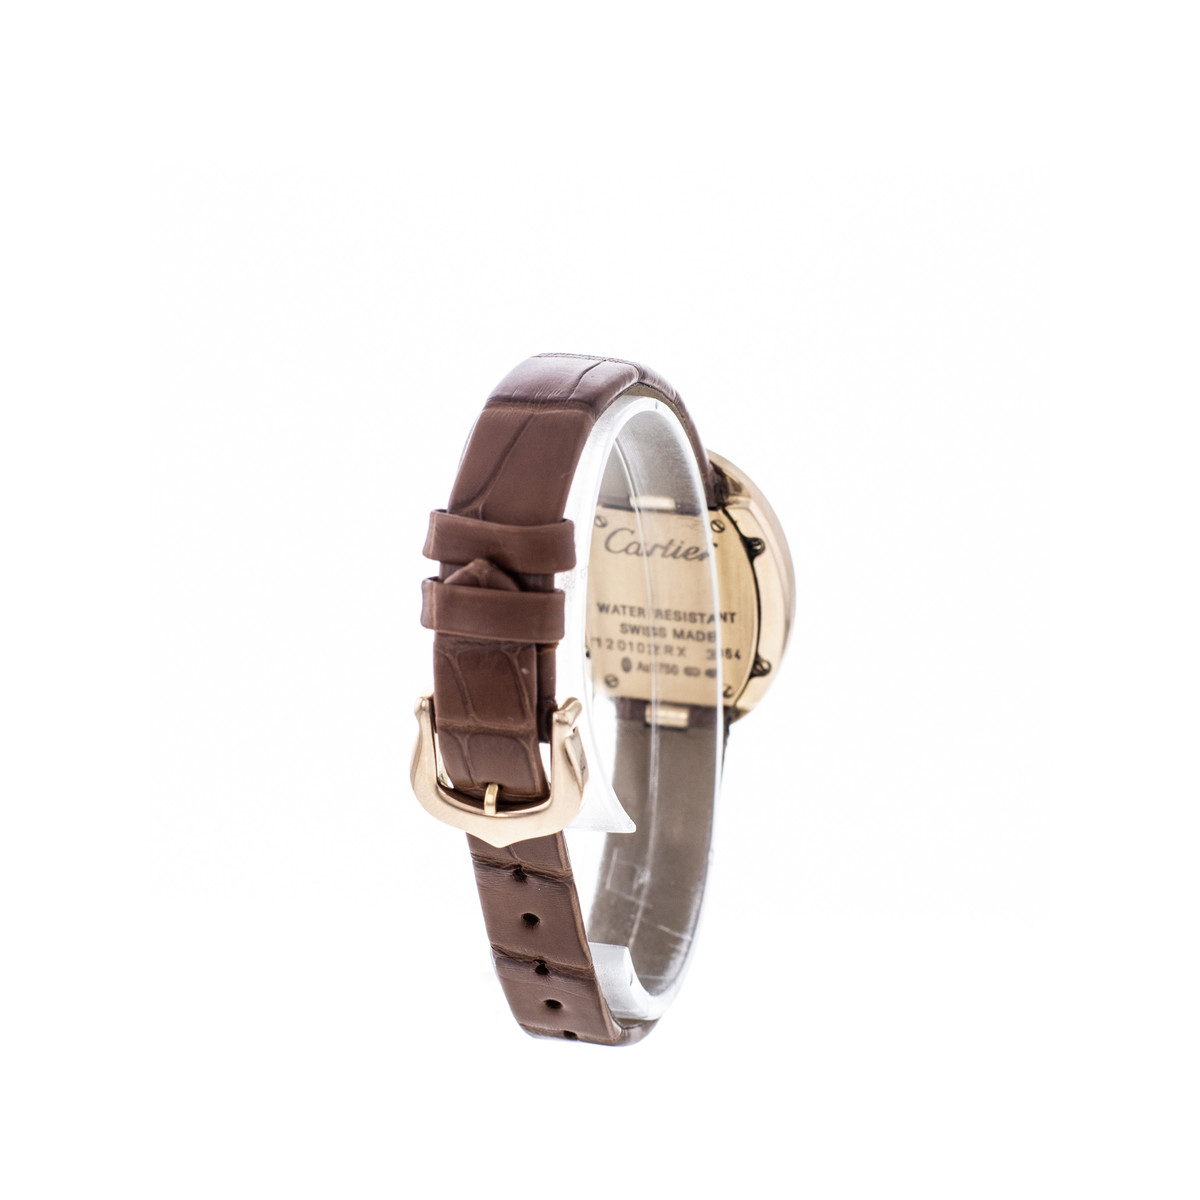 Montre d'occasion Cartier Baignoire femme or rose 750 bracelet cuir marron - vue 3